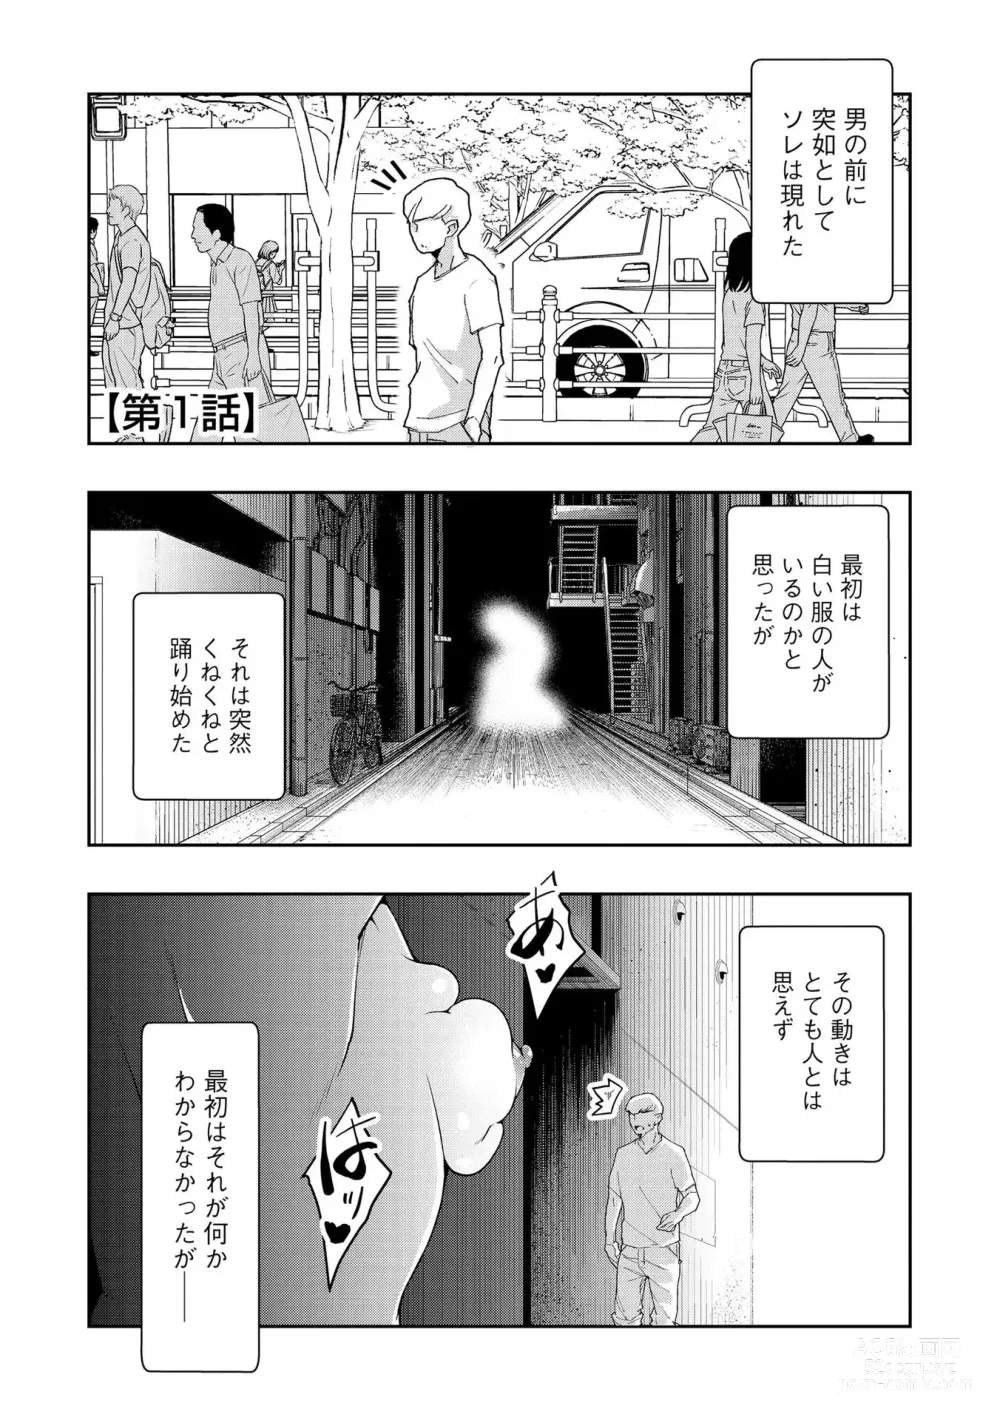 Page 4 of manga Kai-In Hontou wa Yarashii Toshi Densetsu